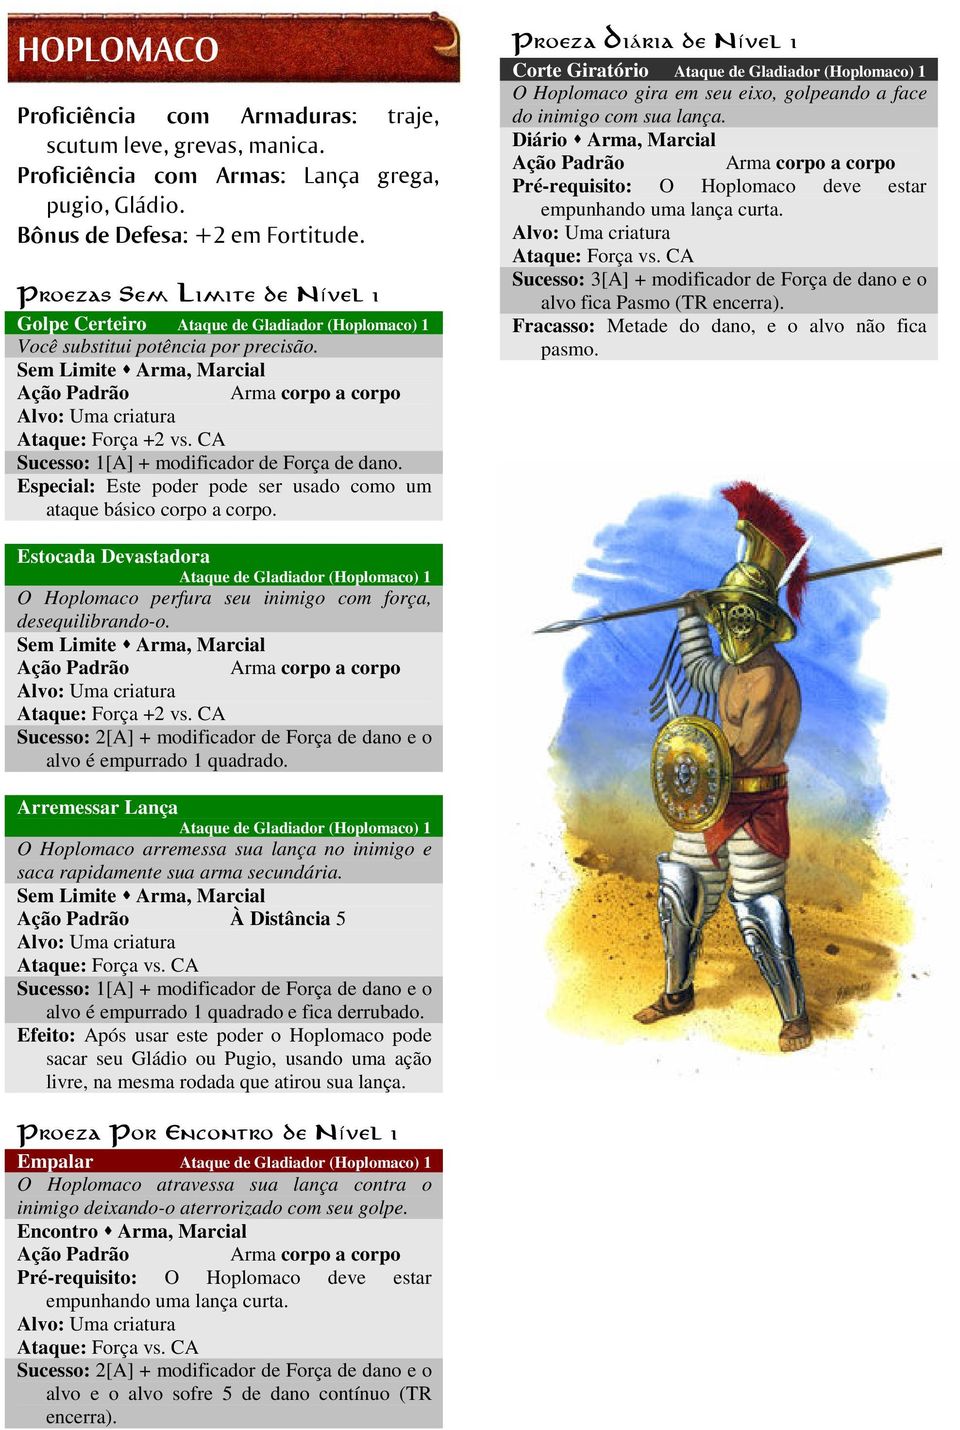 Corte Giratório Ataque de Gladiador (Hoplomaco) 1 O Hoplomaco gira em seu eixo, golpeando a face do inimigo com sua lança. Pré-requisito: O Hoplomaco deve estar empunhando uma lança curta.